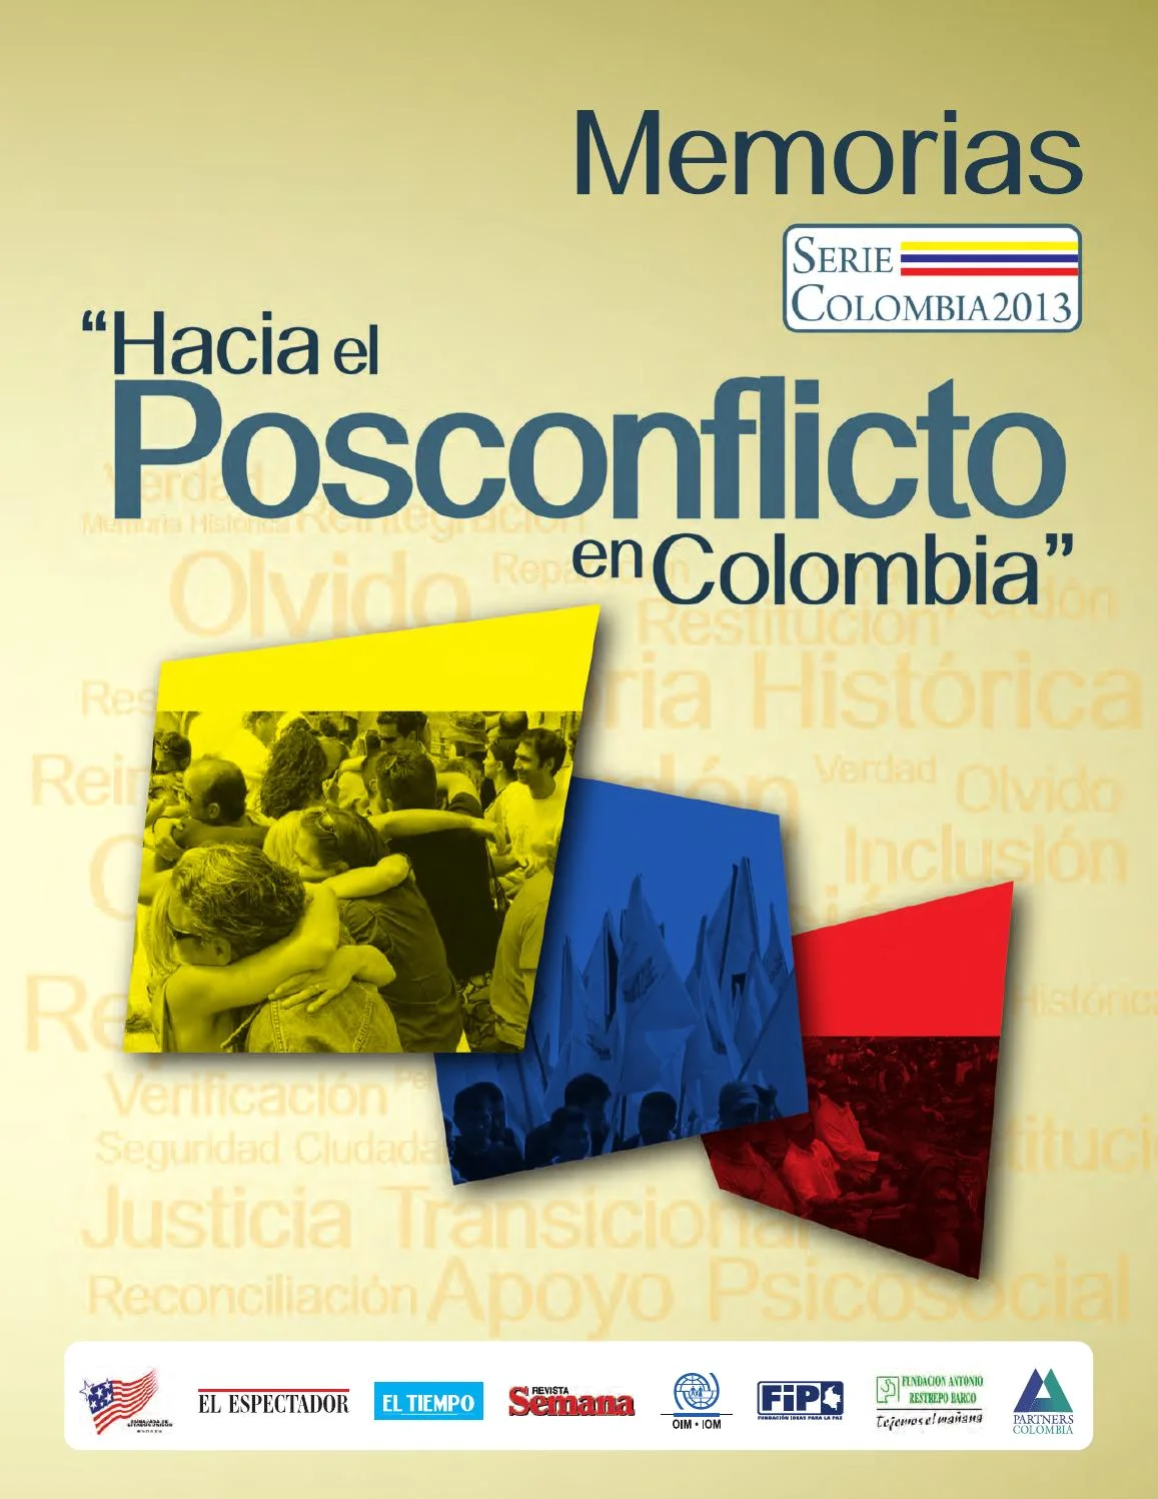 Serie Colombia 2013 – Hacia el Posconflicto en Colombia